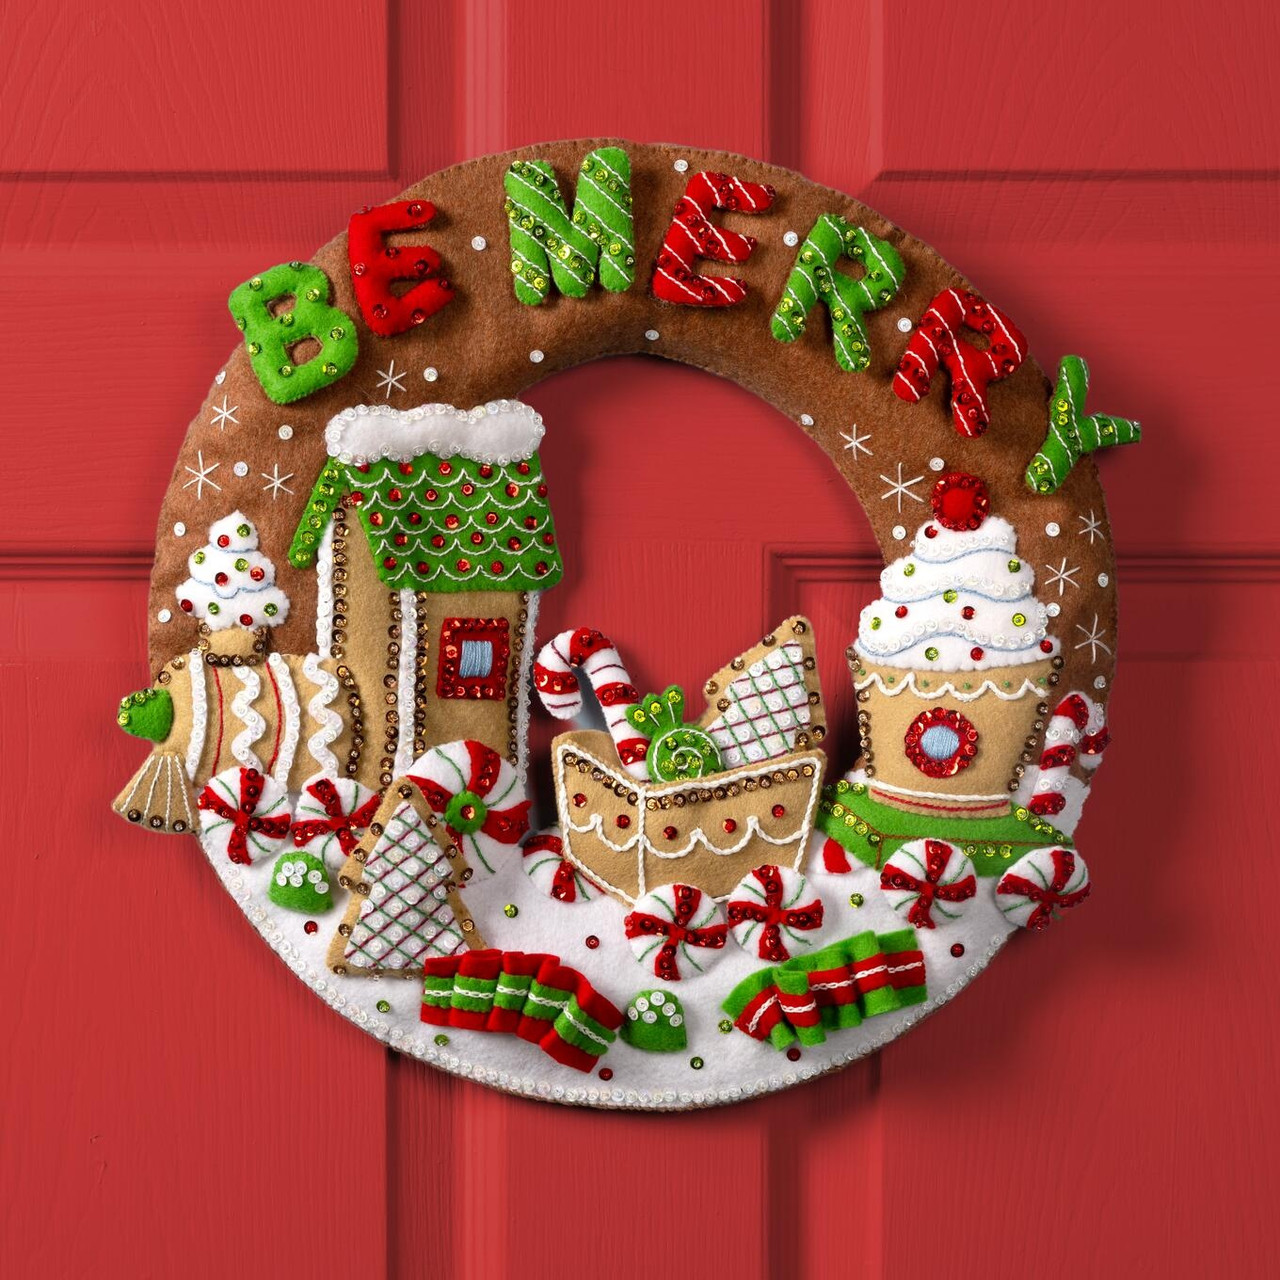 Bucilla Felt Applique Wreath Kit, 15-Inch Round, 86264 Cookies & Candy